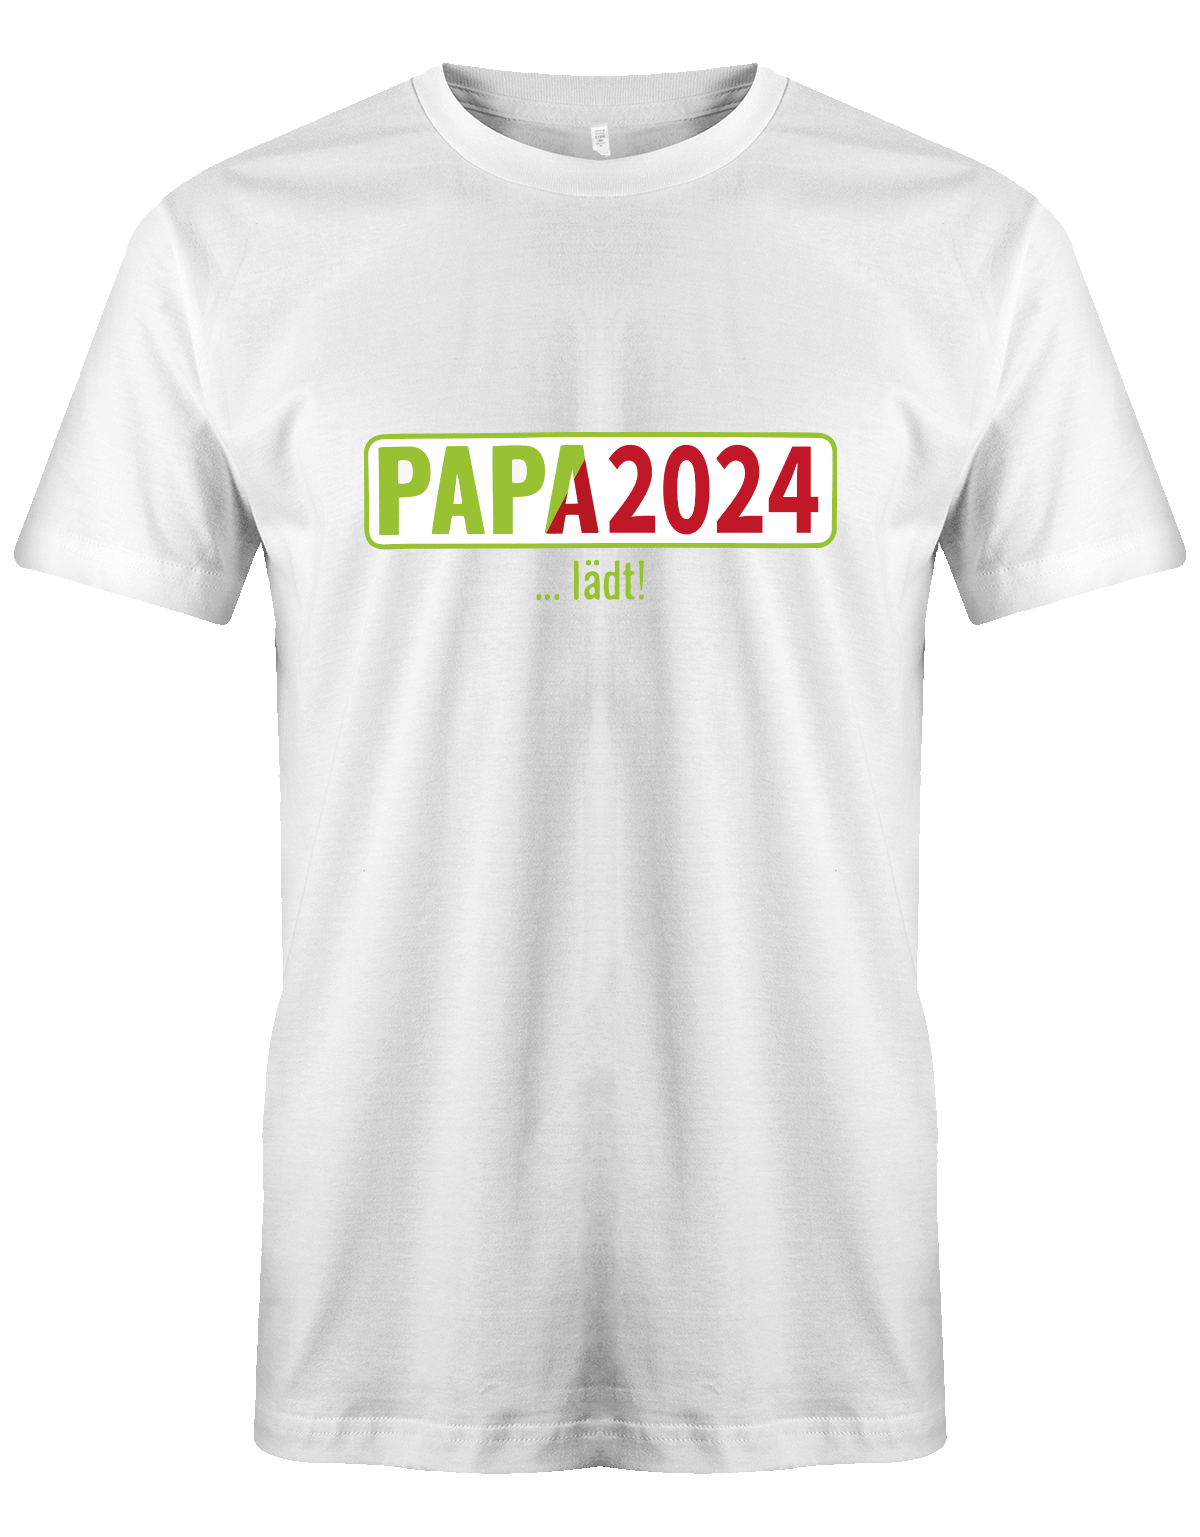 Papa 2024 lädt - loading - Werdender Papa Shirt Herren weiß